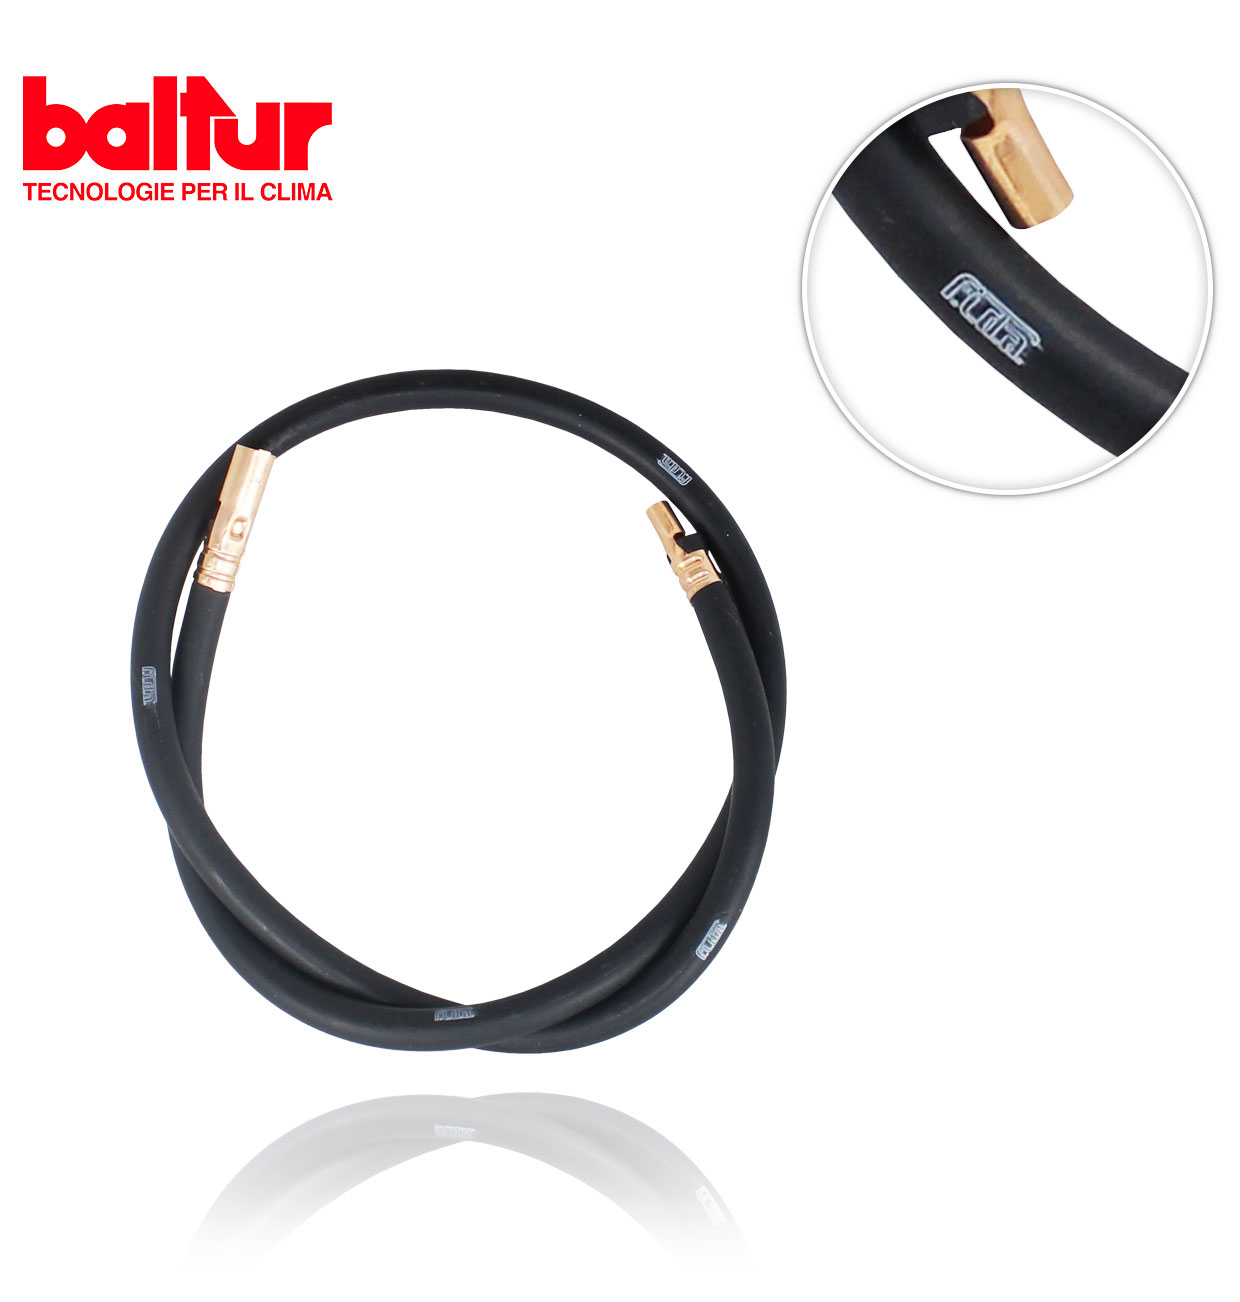 BALTUR 0005020036 ELECTRODE CABLE